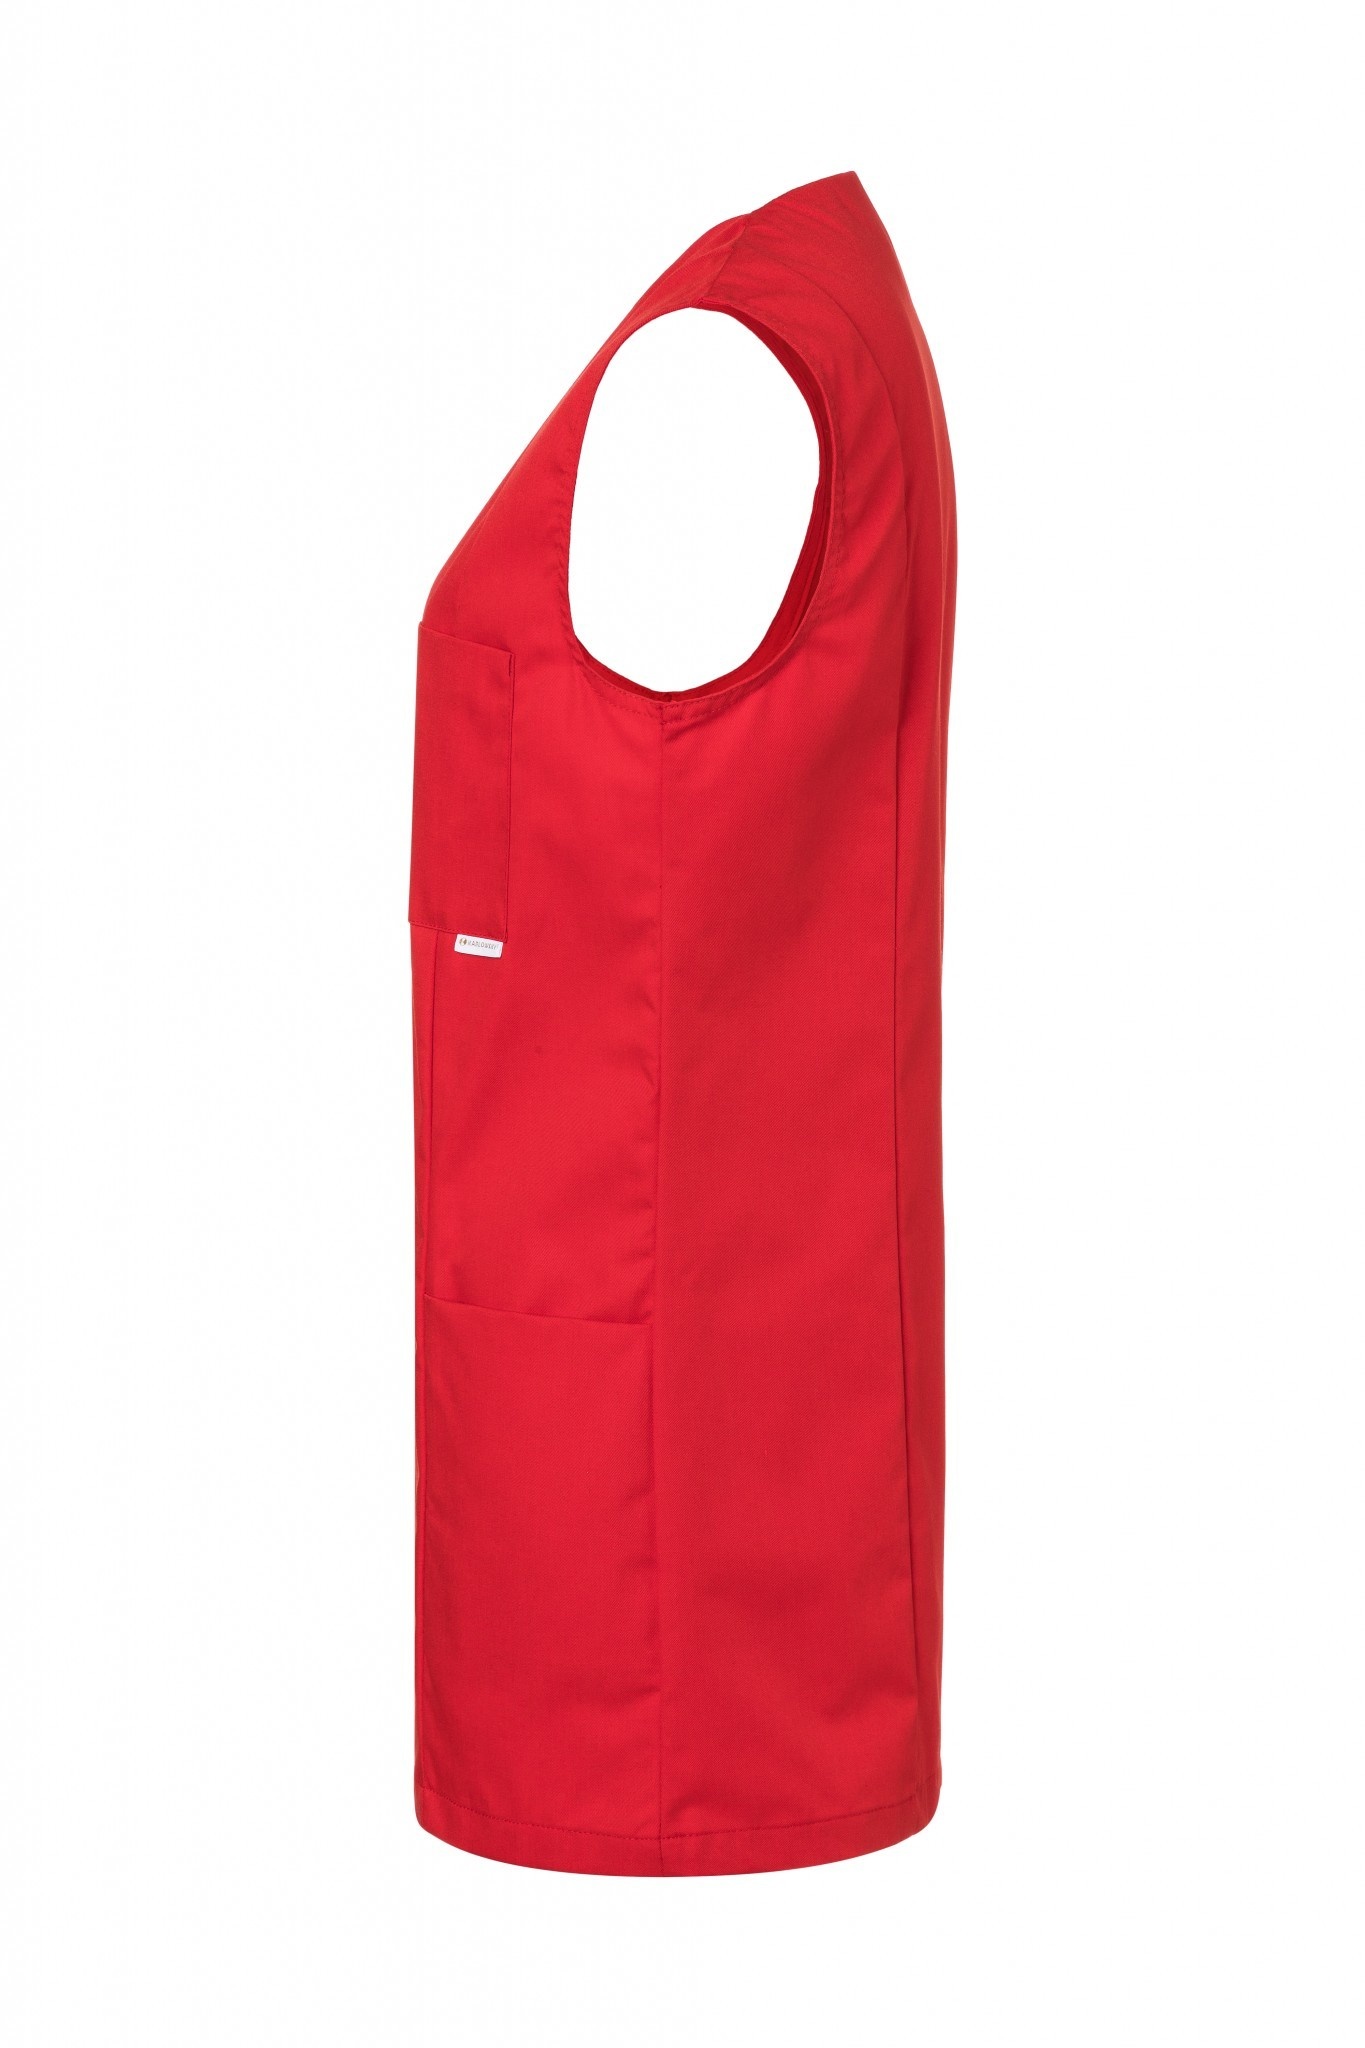 Kasack Sara | Rot | 65% Polyester / 35% Baumwolle | Erhältlich in 12 Größen